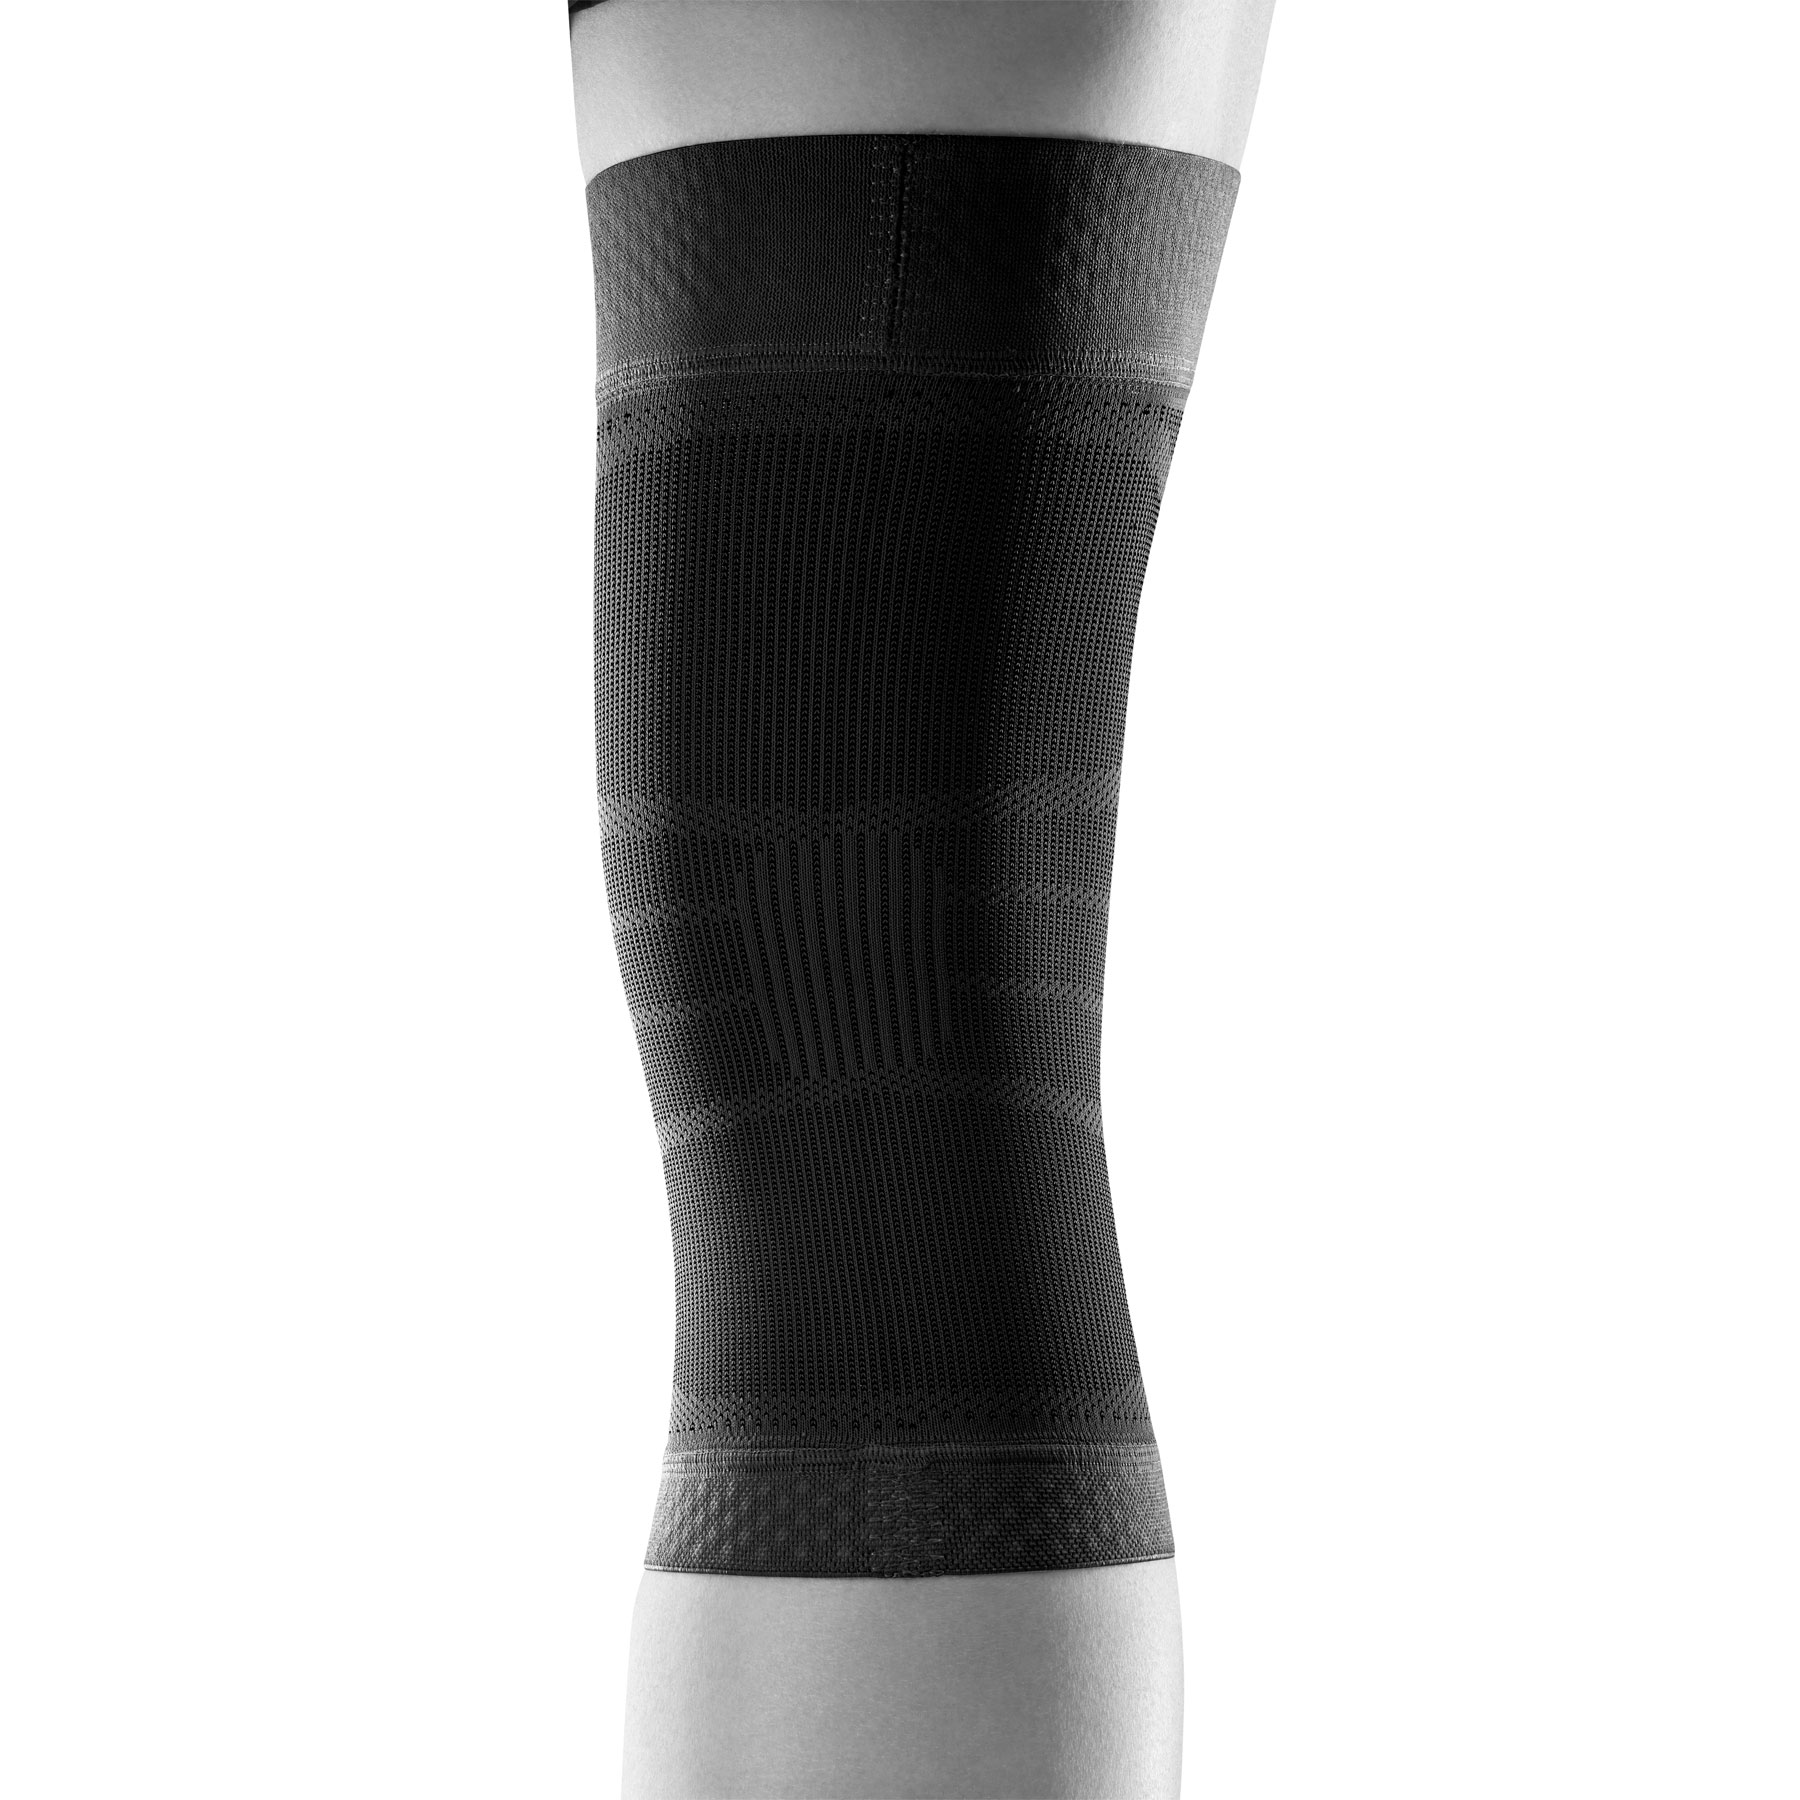 Bauerfeind Sports Compression Knee Support - black